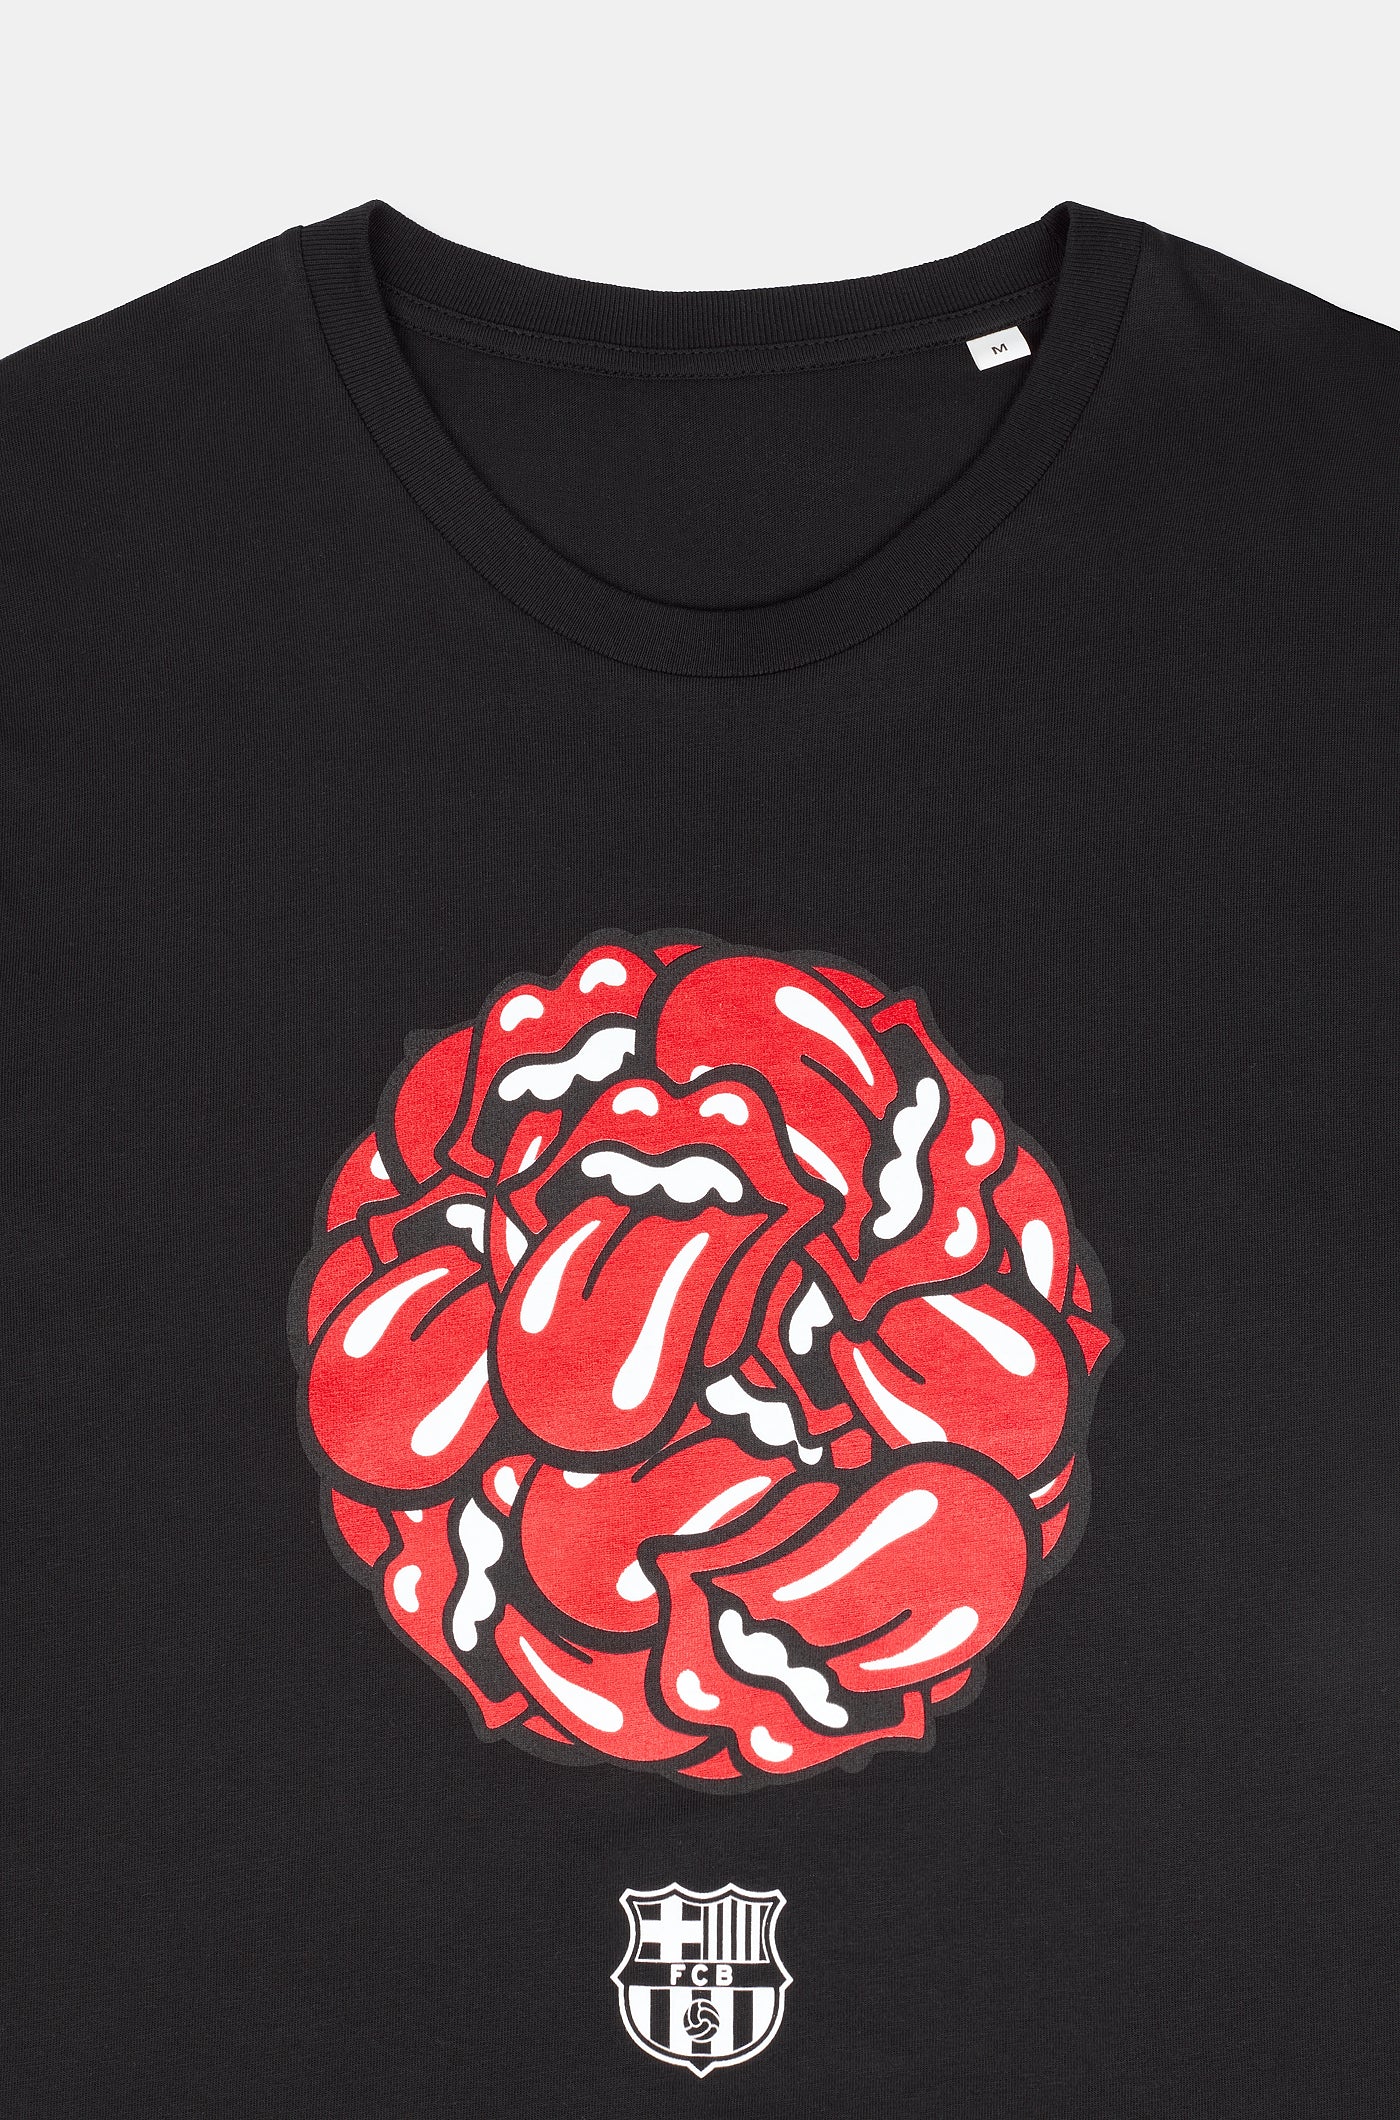 Camiseta de edición limitada Barça x Rolling Stones